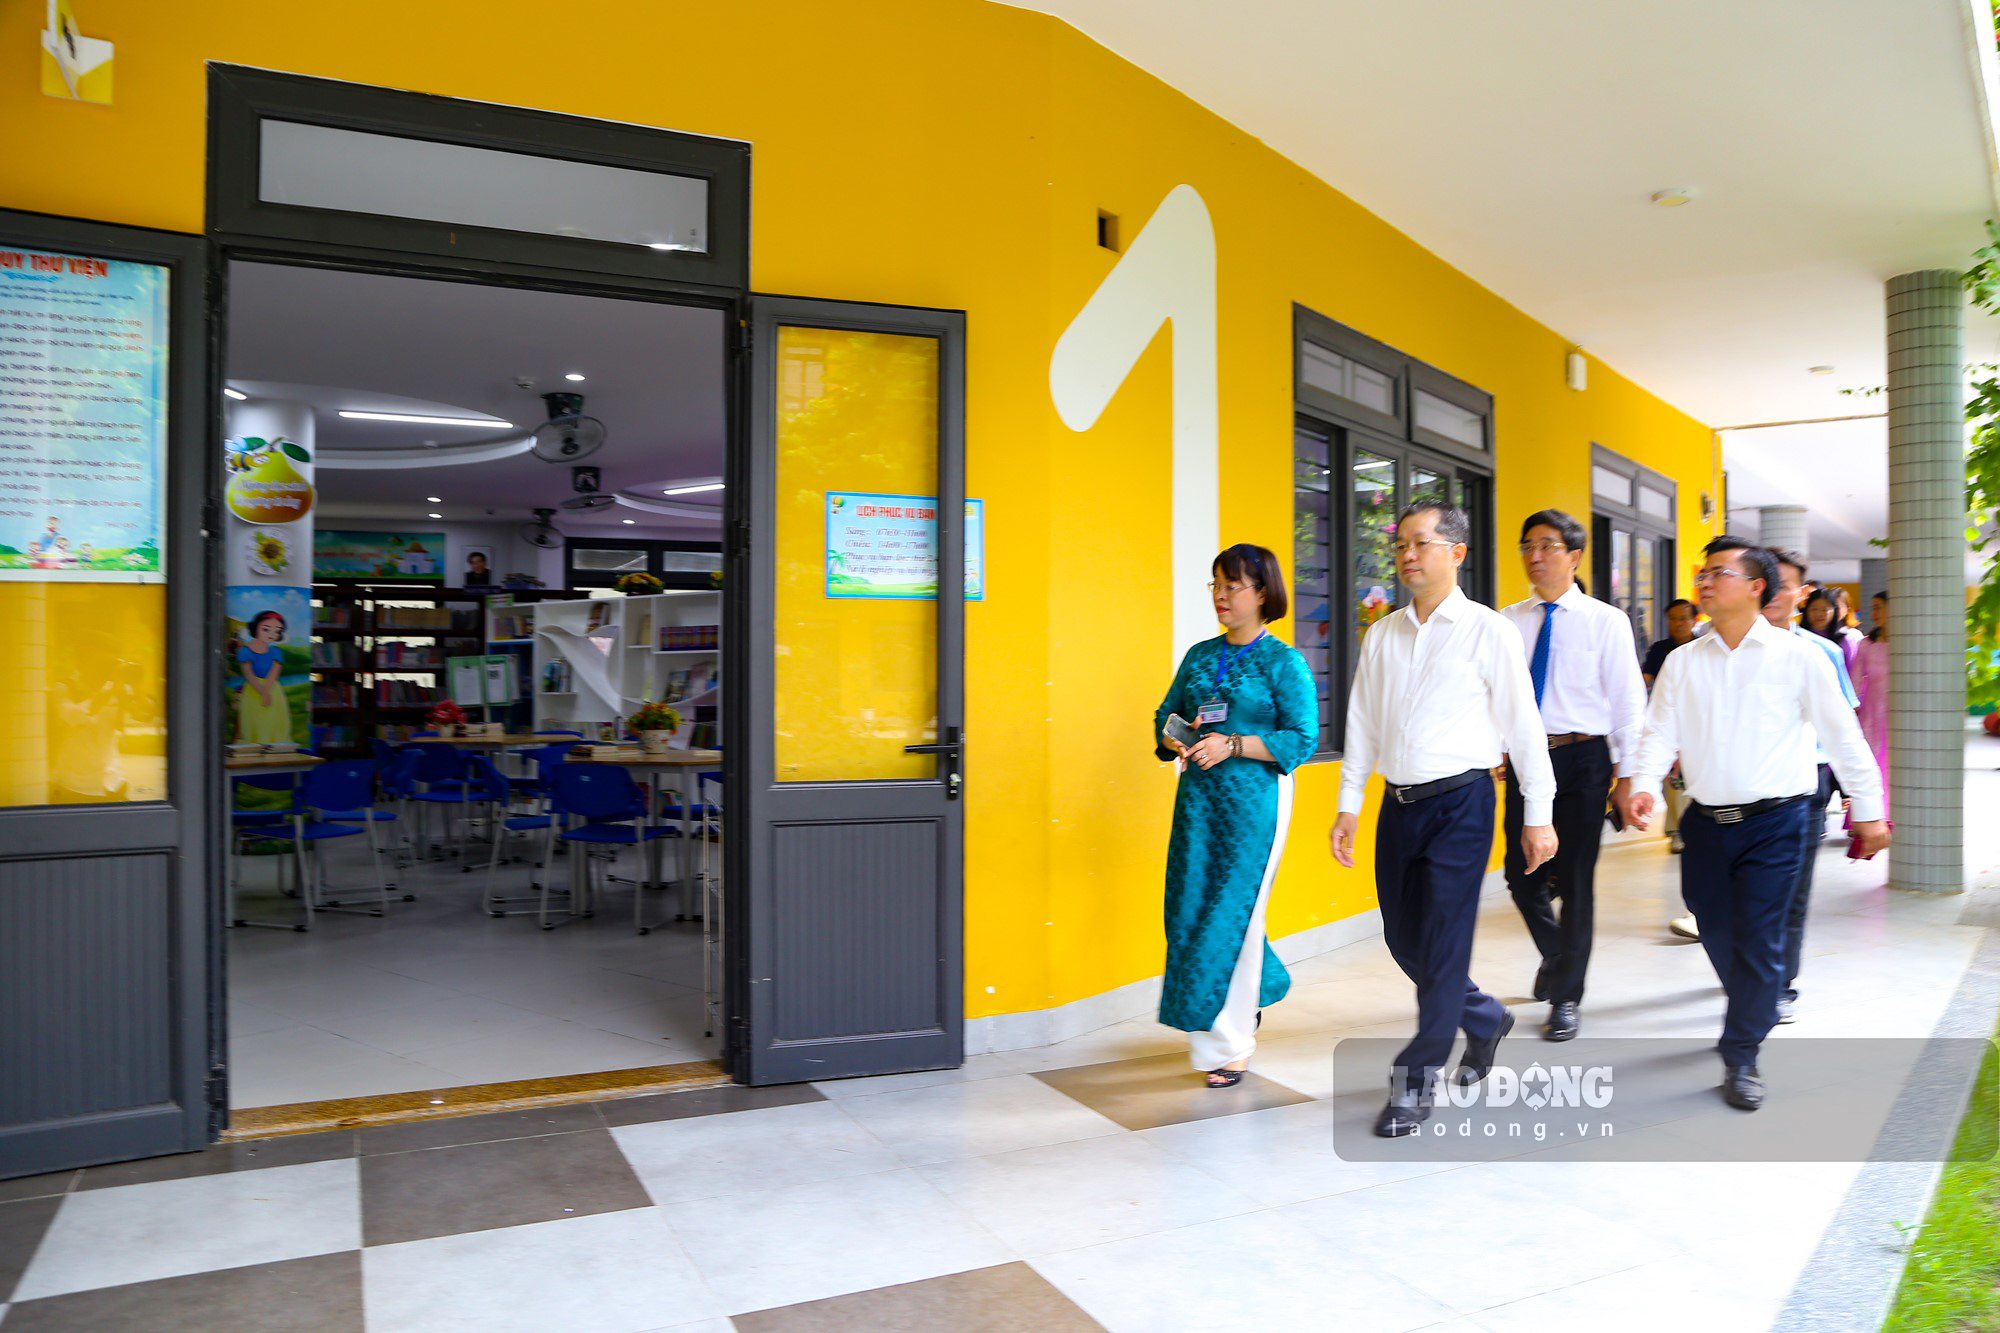   Sau buổi lễ, lãnh đạo Đà Nẵng cùng các thầy cô thăm các phòng chuyên môn, thư viện nhà trường. 